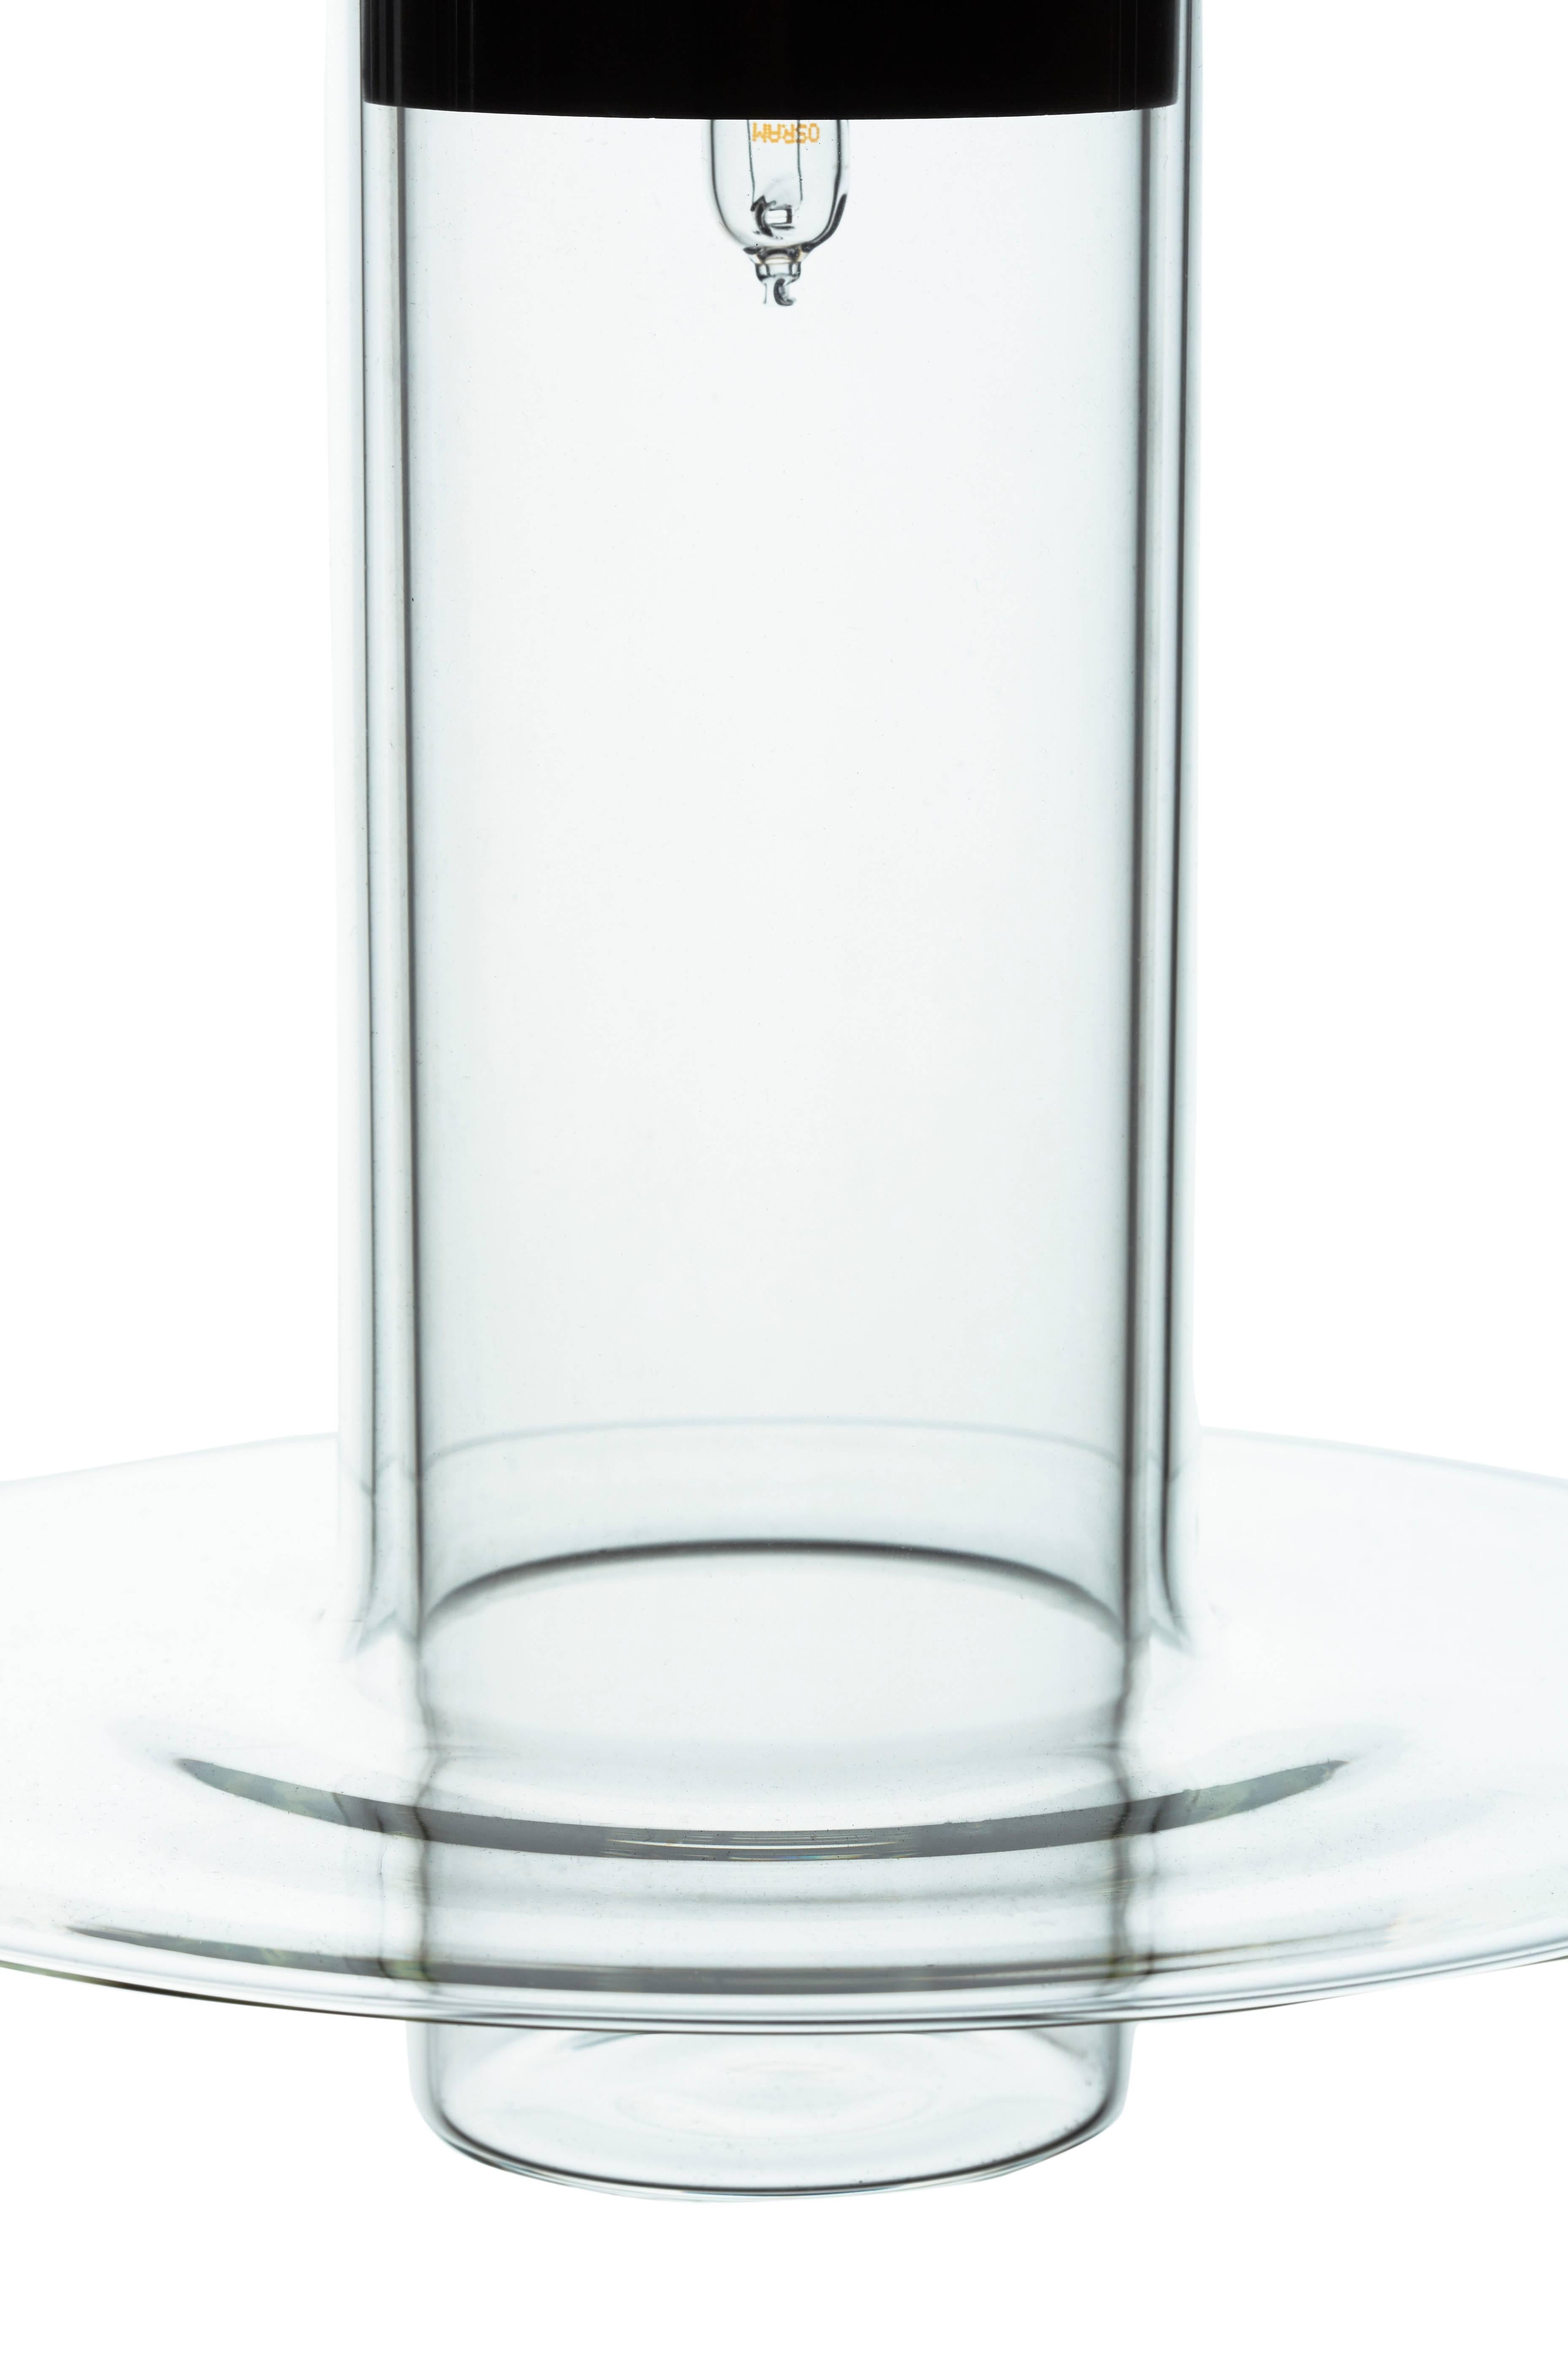 Le design de Pawson place un cylindre de verre fabriqué à la main à l'intérieur d'un autre, le cylindre extérieur s'évasant en une lèvre discale raffinée sur son bord inférieur. La lampe projette la lumière vers le bas, mais son corps transparent